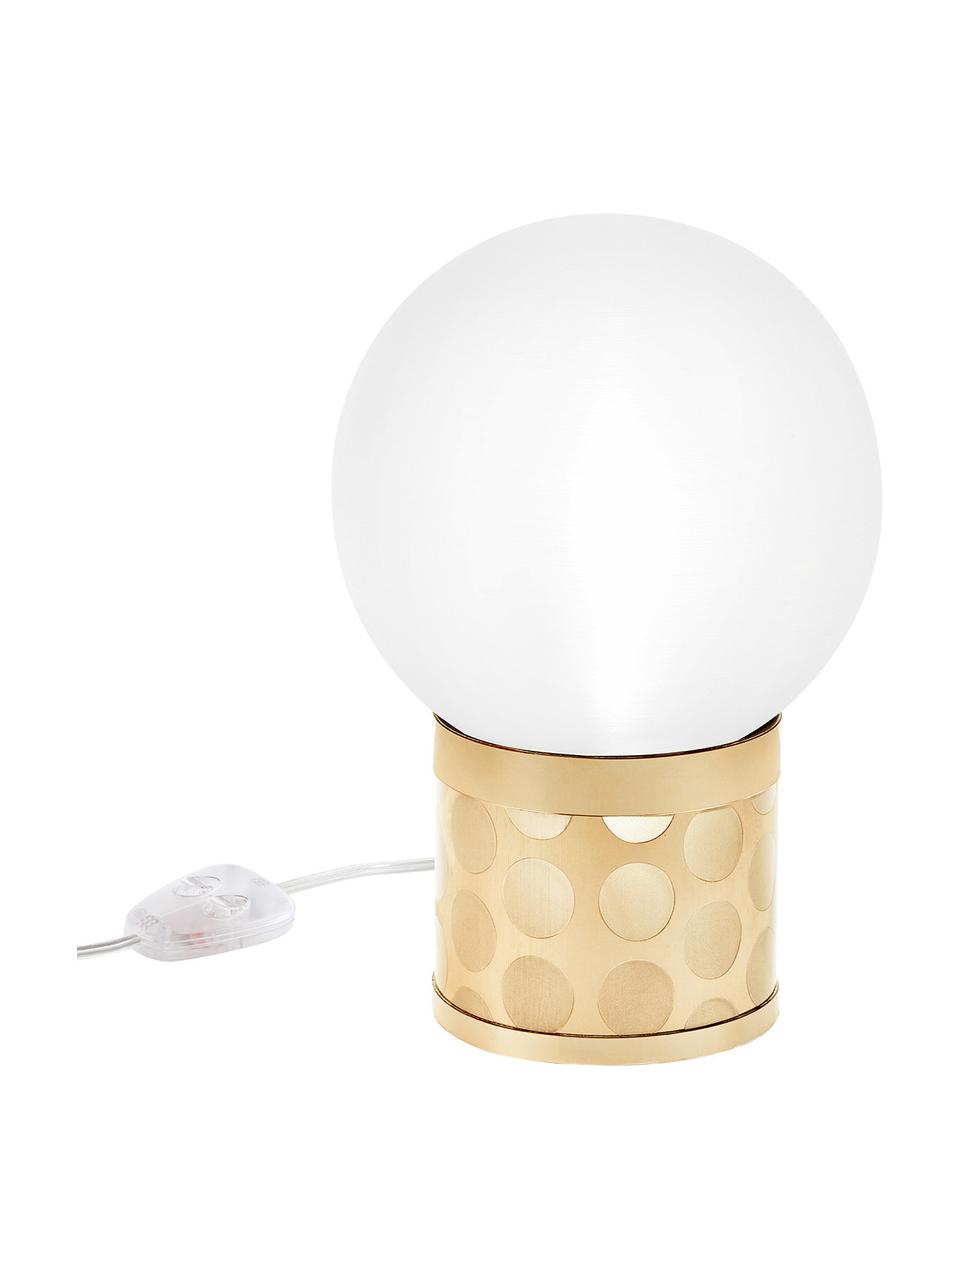 Kleine Dimmbare Tischlampe Atmosfera in Gold, Lampenschirm: Methacrylate, Lampenfuß: Methacrylate, Goldflex, Goldfarben, Weiß, 20 x 30 cm